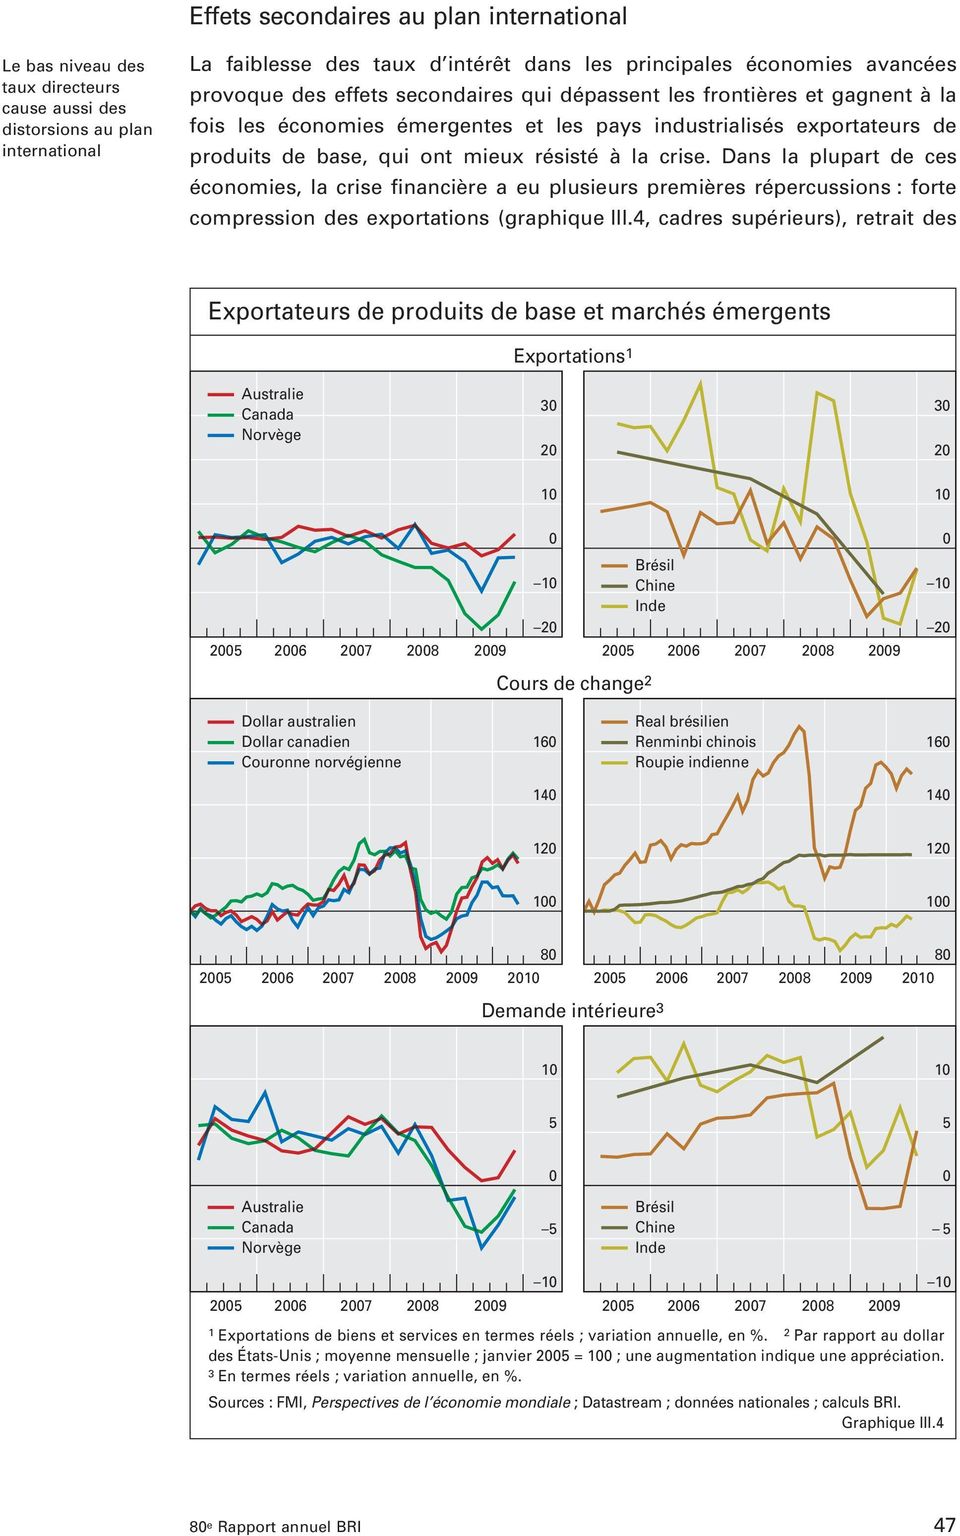 Dans la plupart de ces économies, la crise financière a eu plusieurs premières répercussions : forte compression des exportations (graphique III.